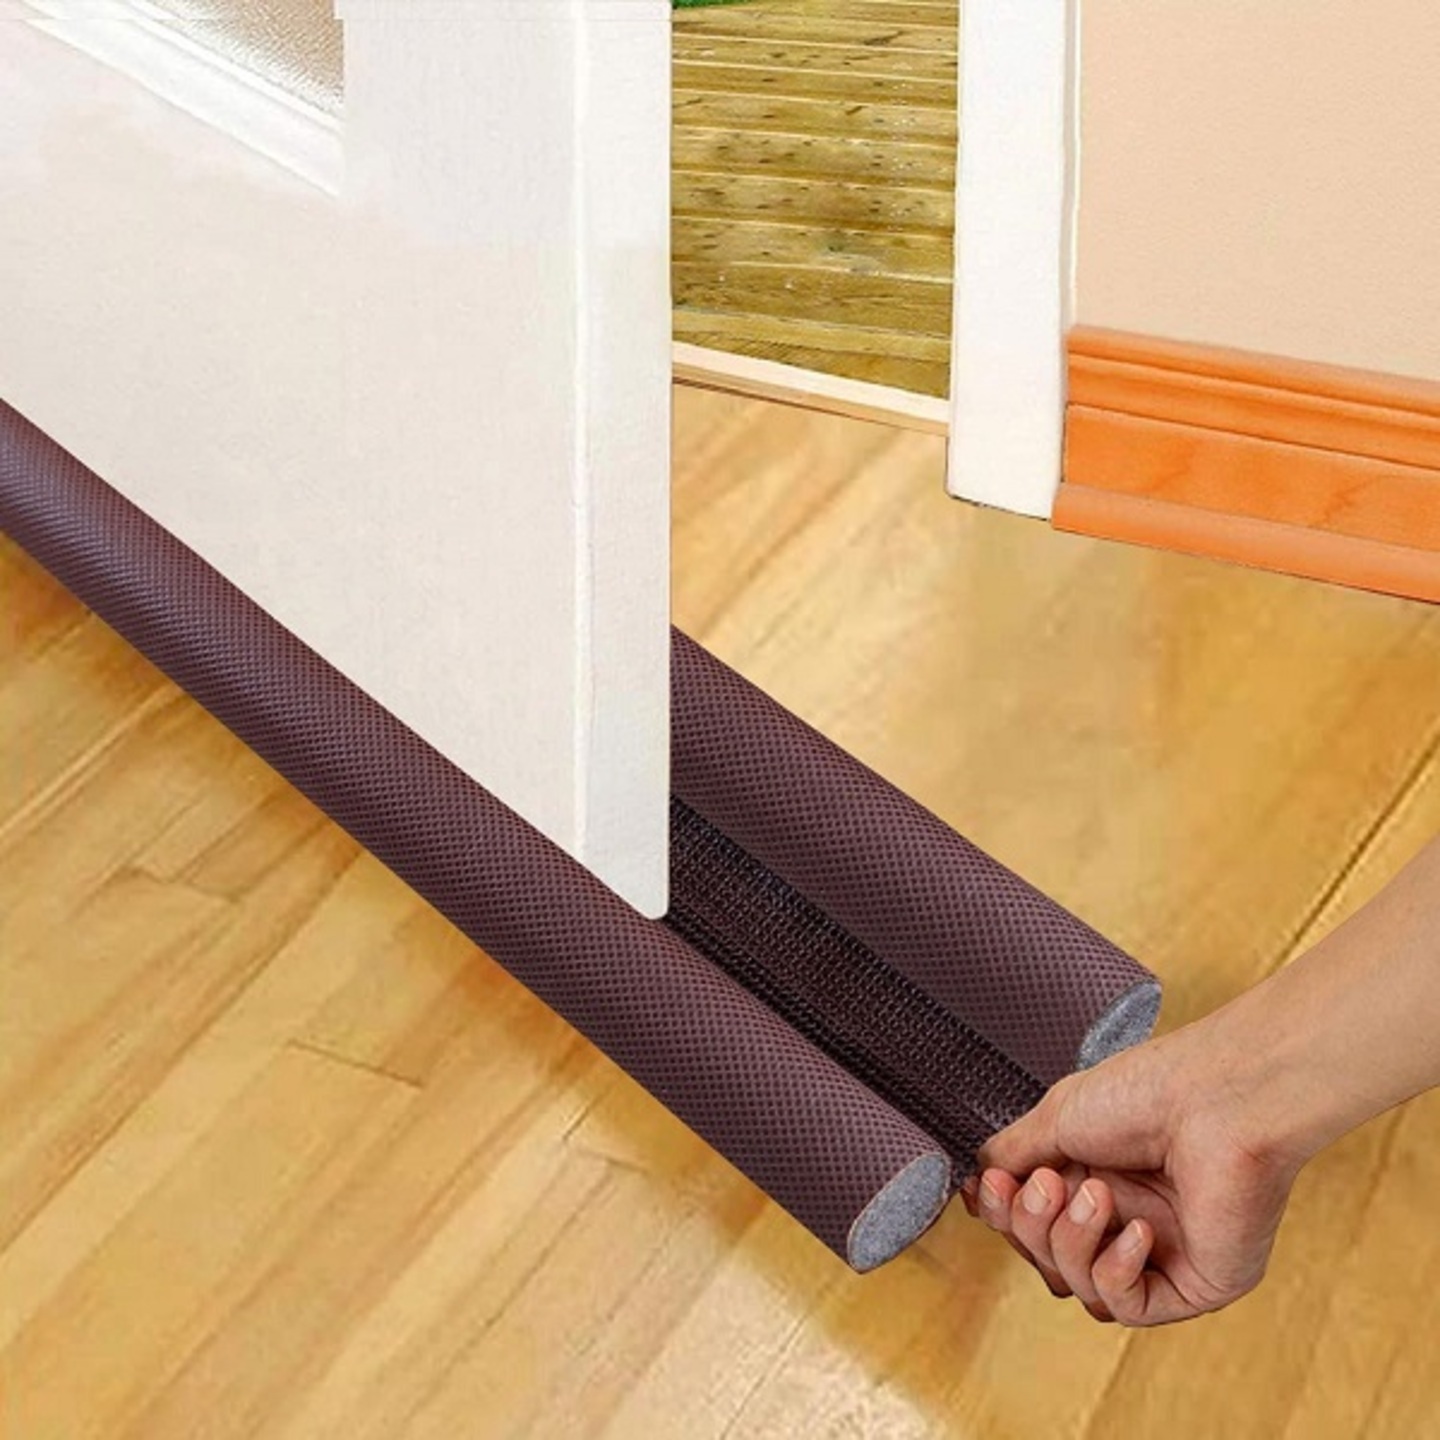 Door Bottom Sealing Strip Guard for Home  Door Stoppers Waterproof - 42 inch